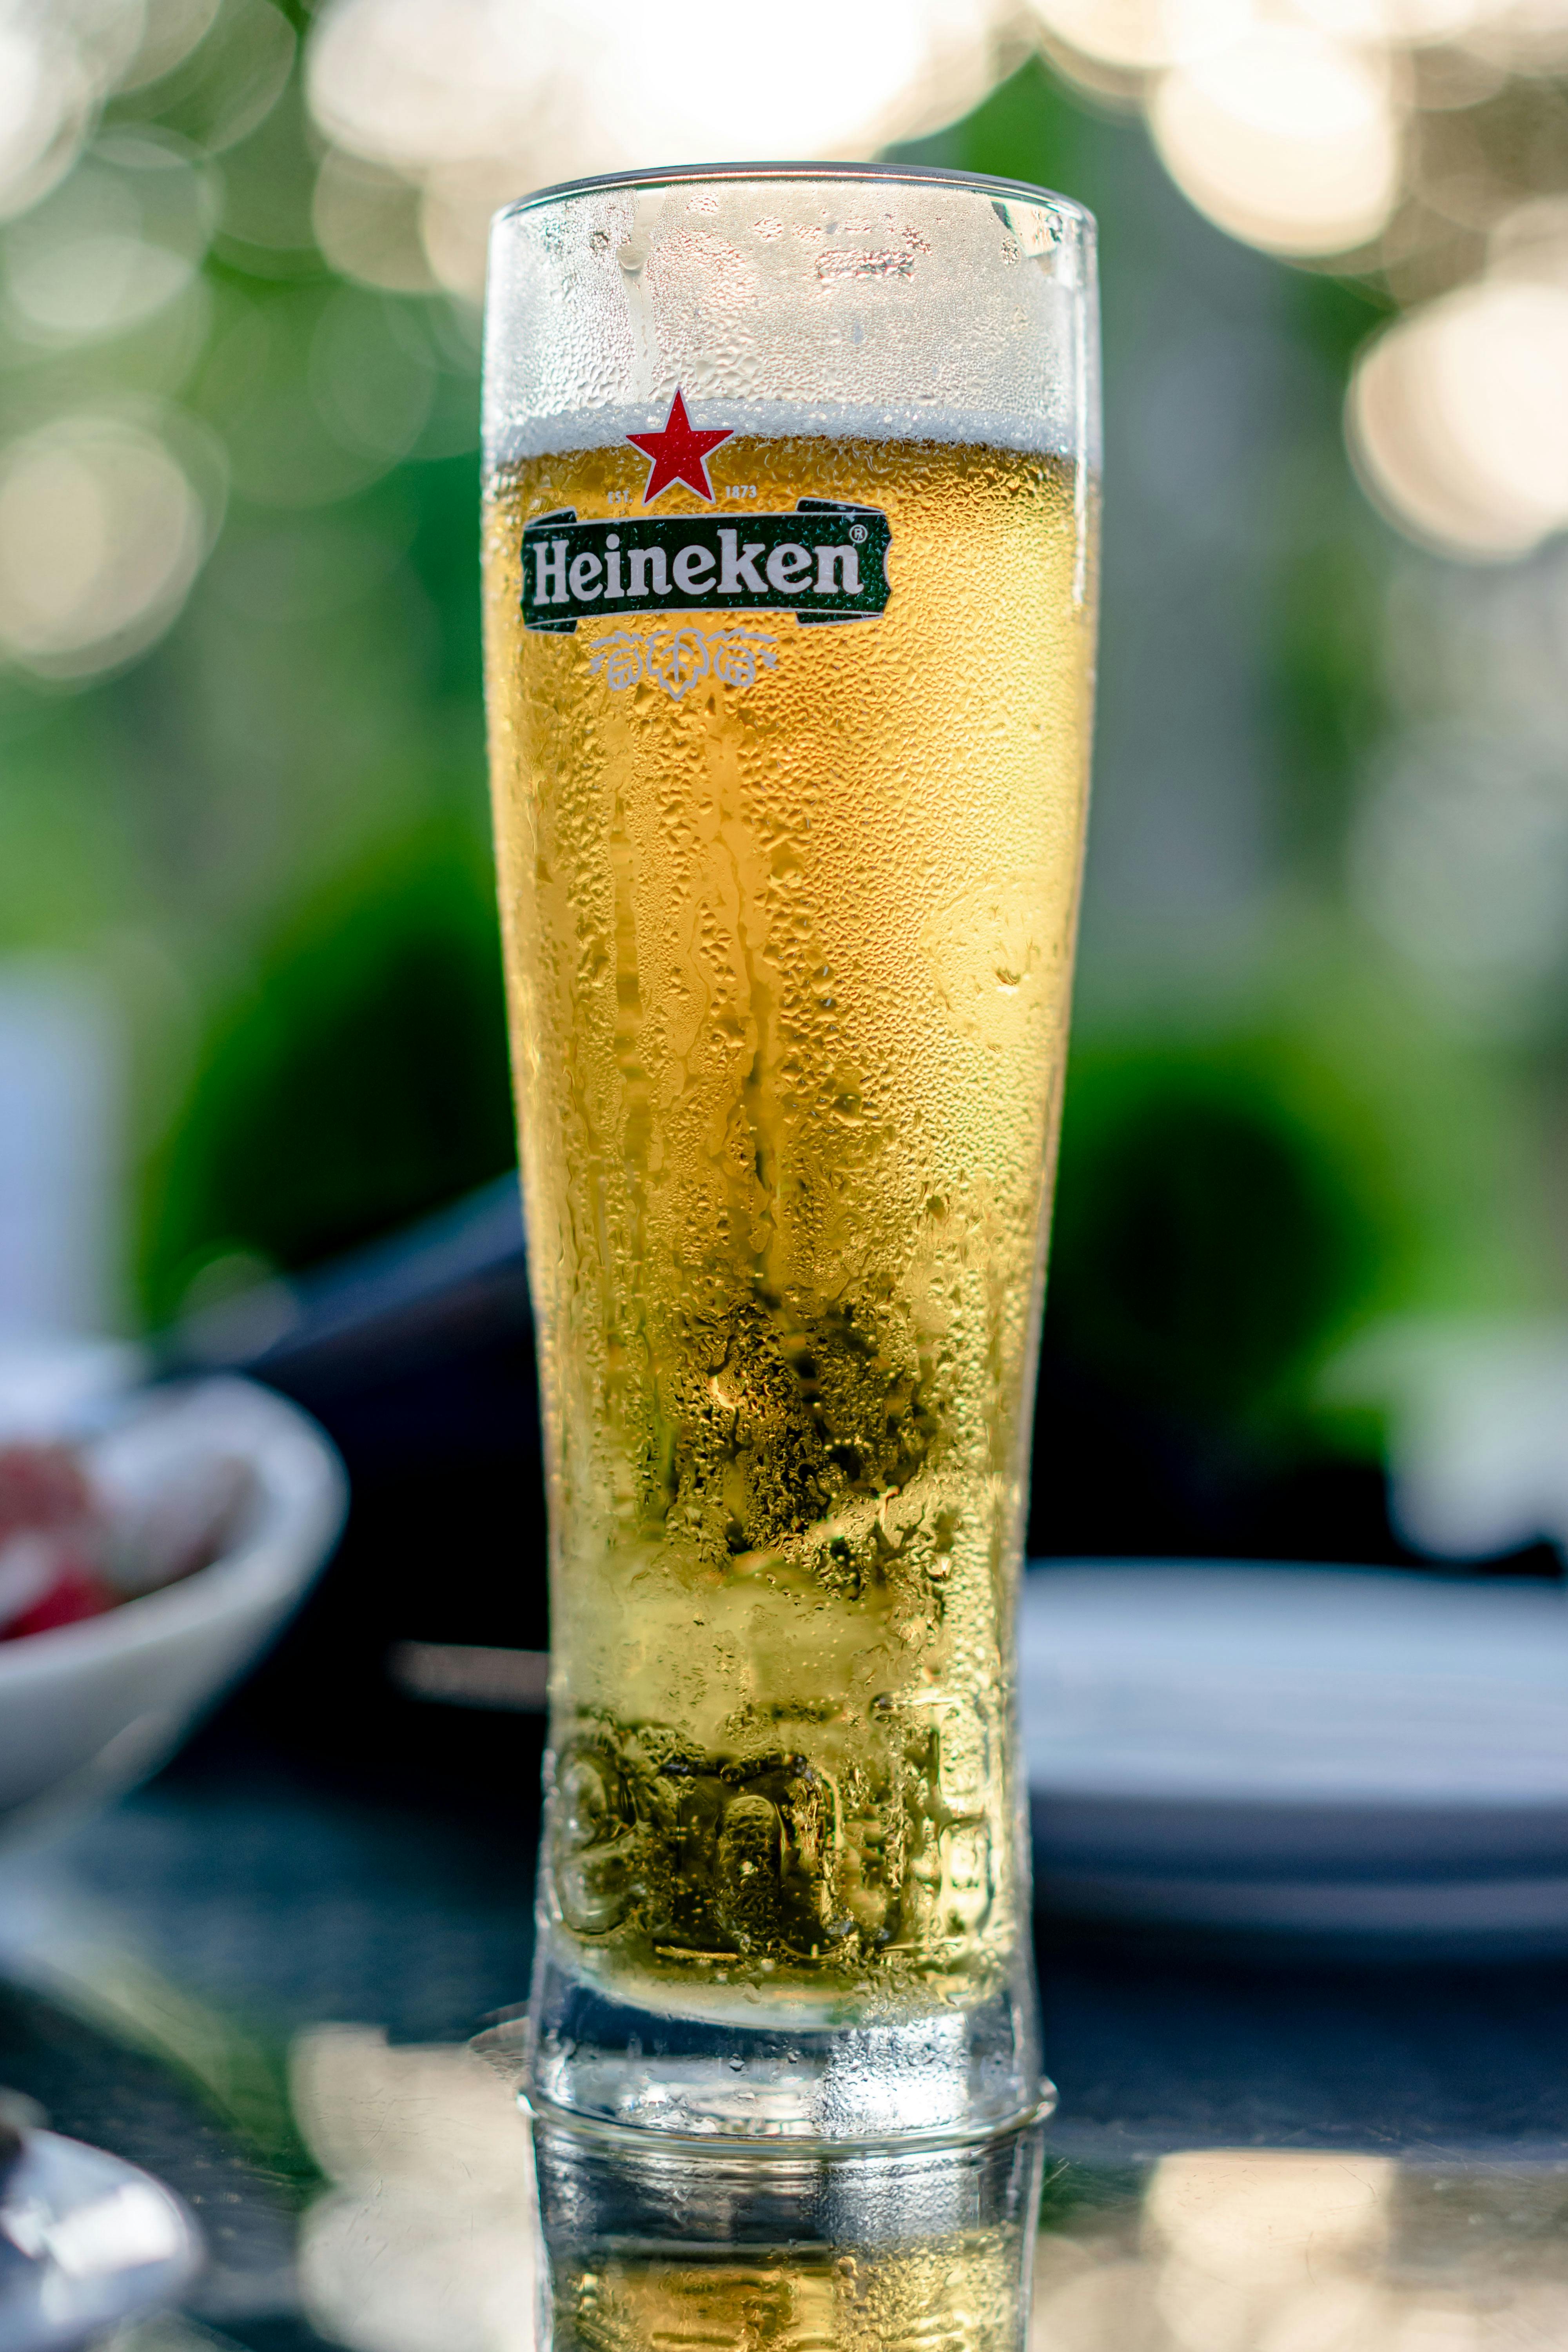 delicatesse ga sightseeing licentie 30+ beste Heineken foto's · 100% gratis downloaden · Pexels-stockfoto's